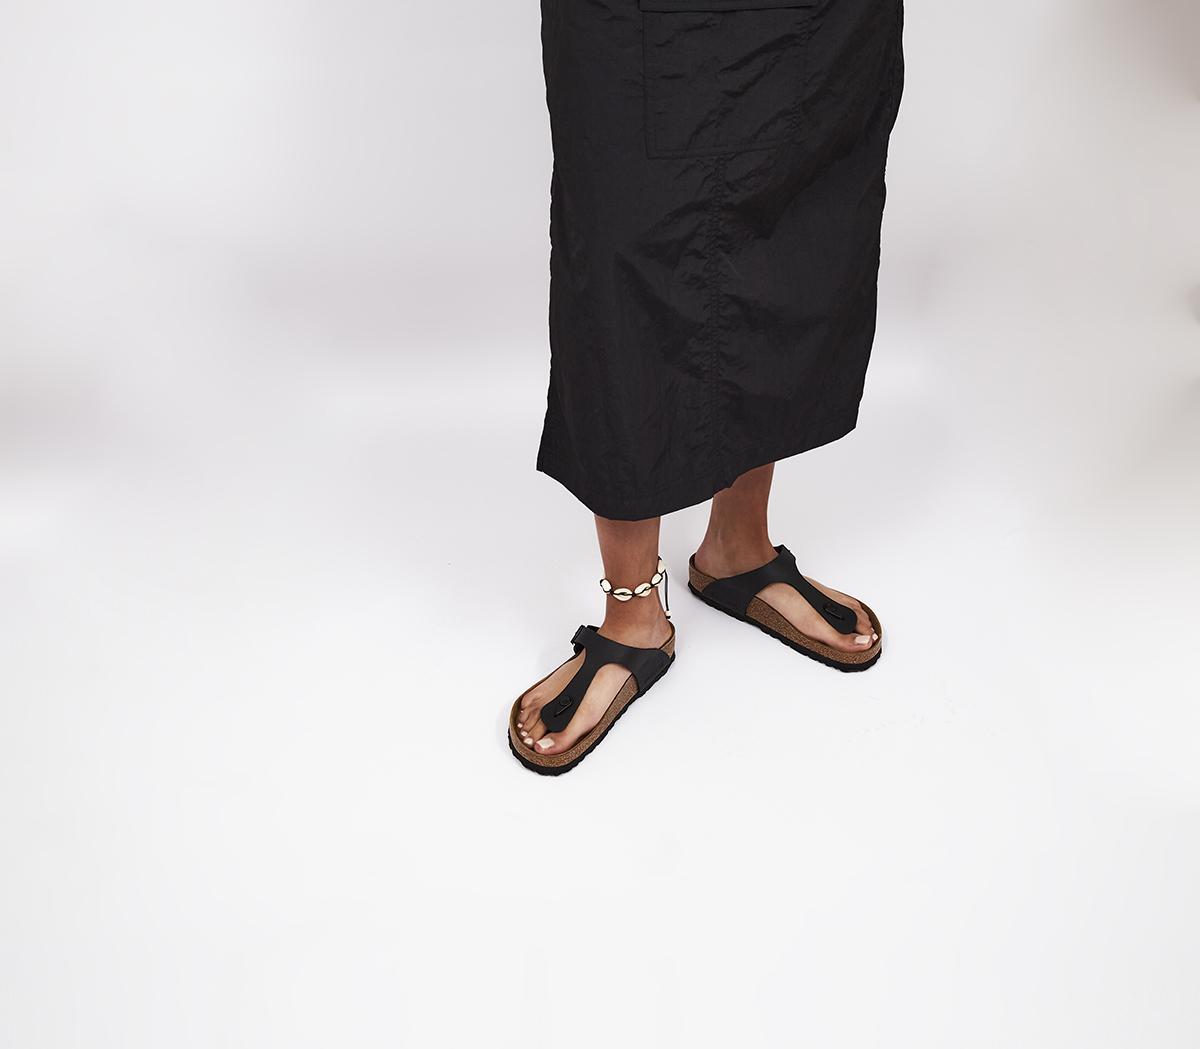 birkenstock women's thong sandal